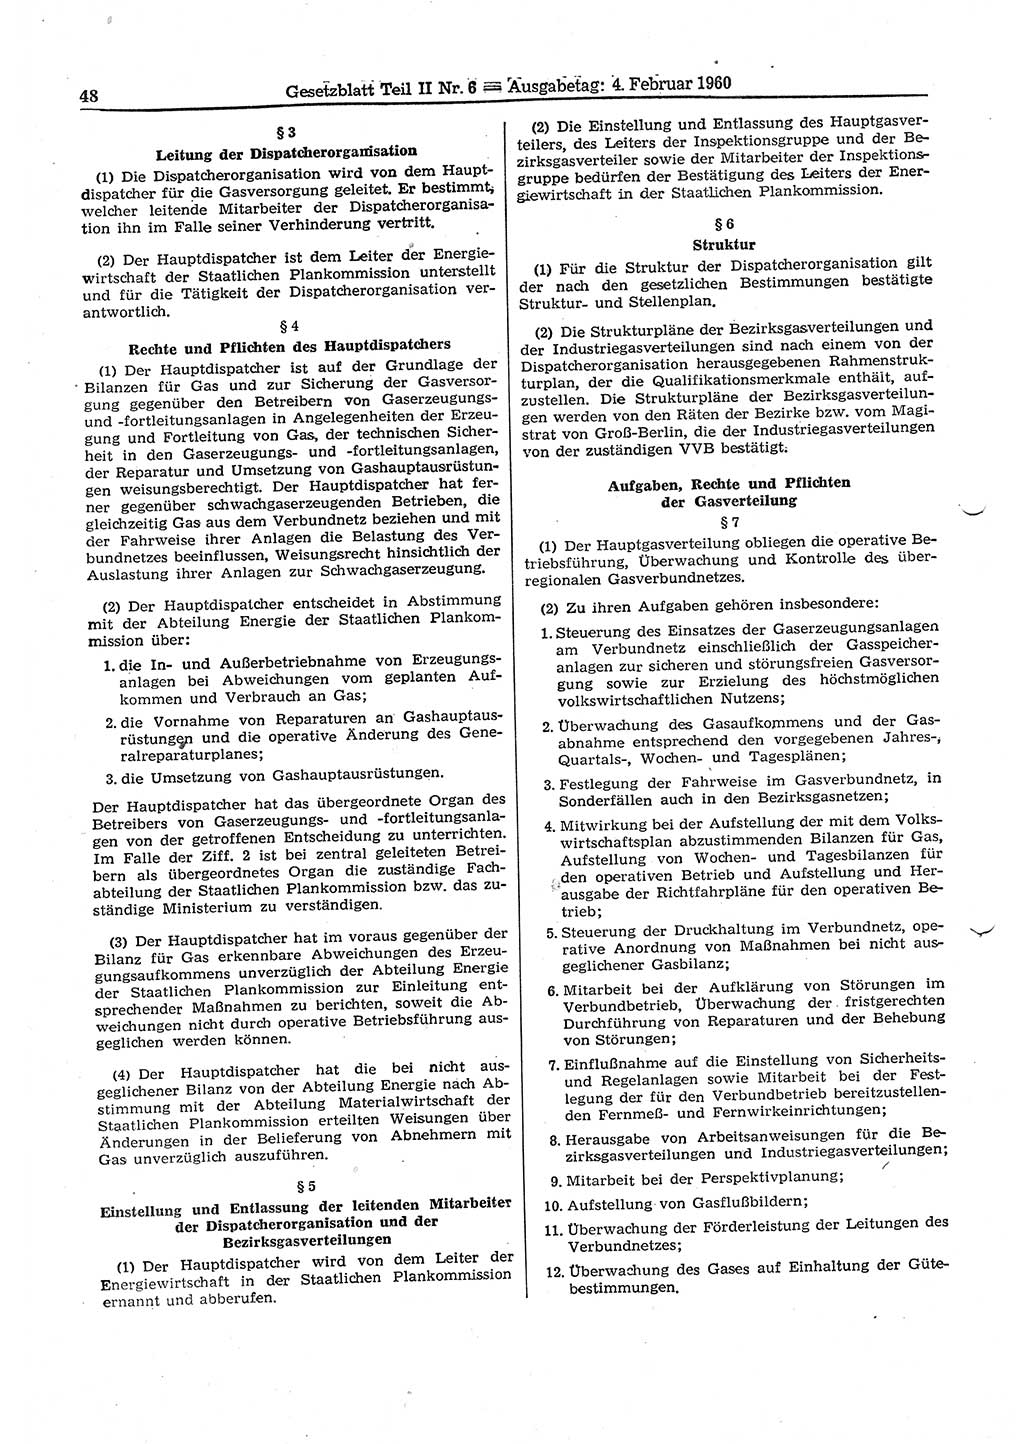 Gesetzblatt (GBl.) der Deutschen Demokratischen Republik (DDR) Teil ⅠⅠ 1960, Seite 48 (GBl. DDR ⅠⅠ 1960, S. 48)